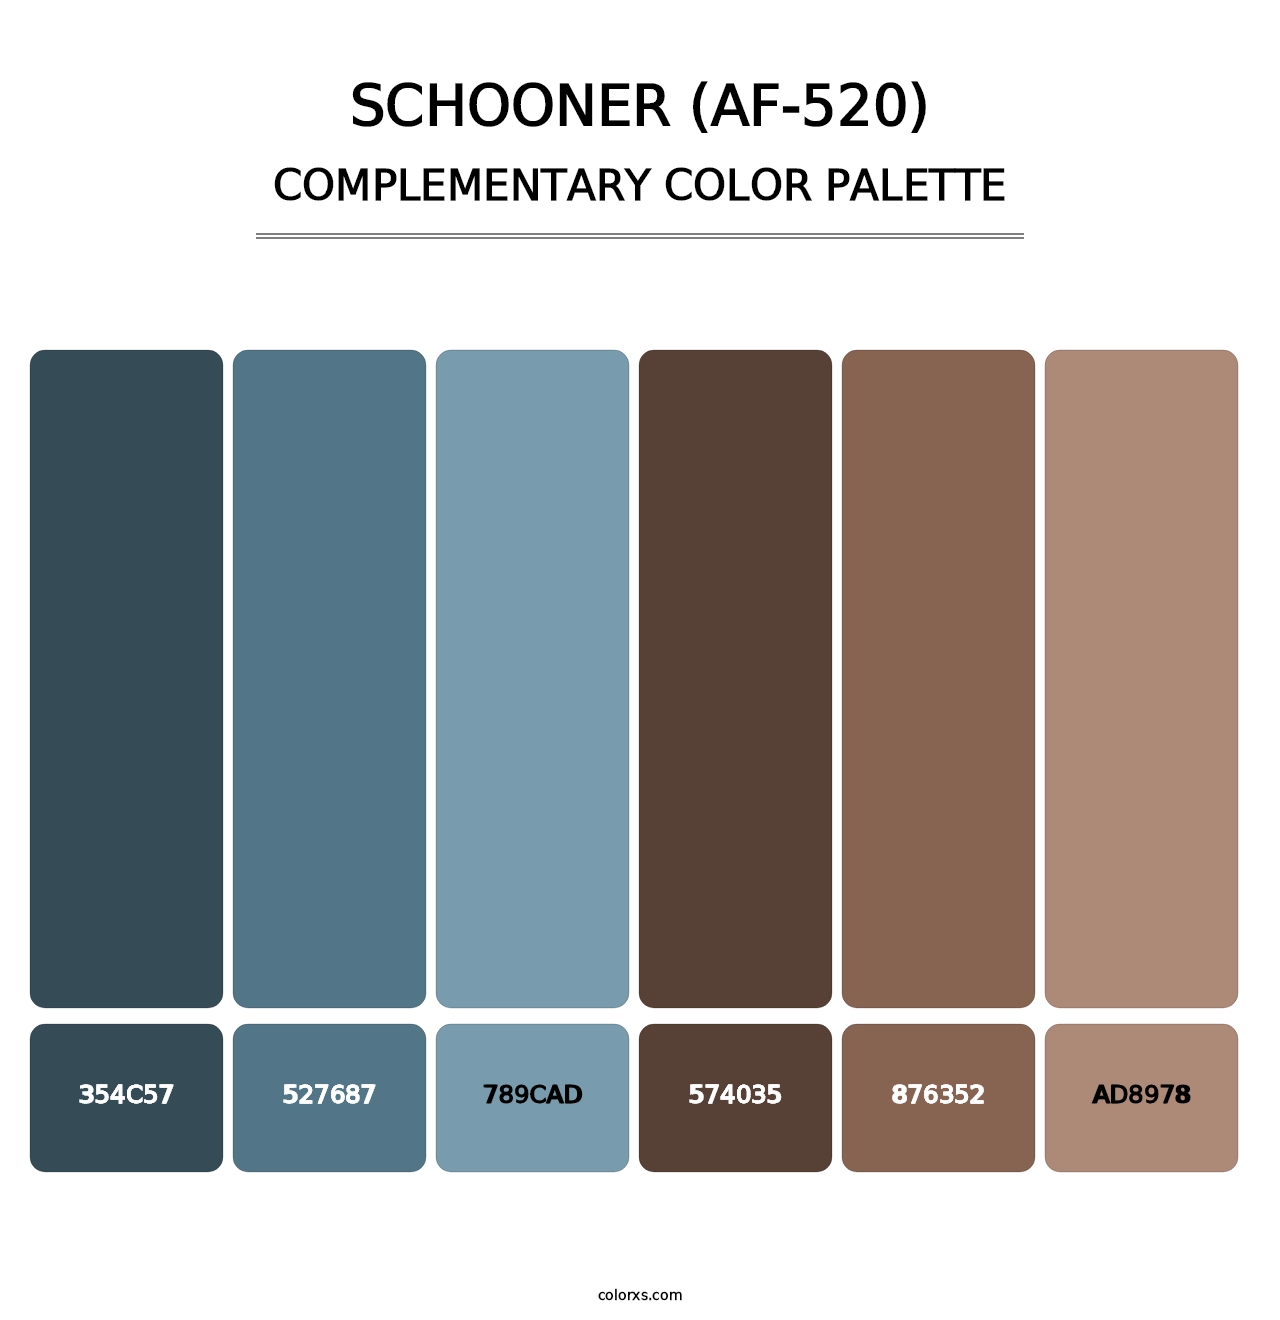 Schooner (AF-520) - Complementary Color Palette